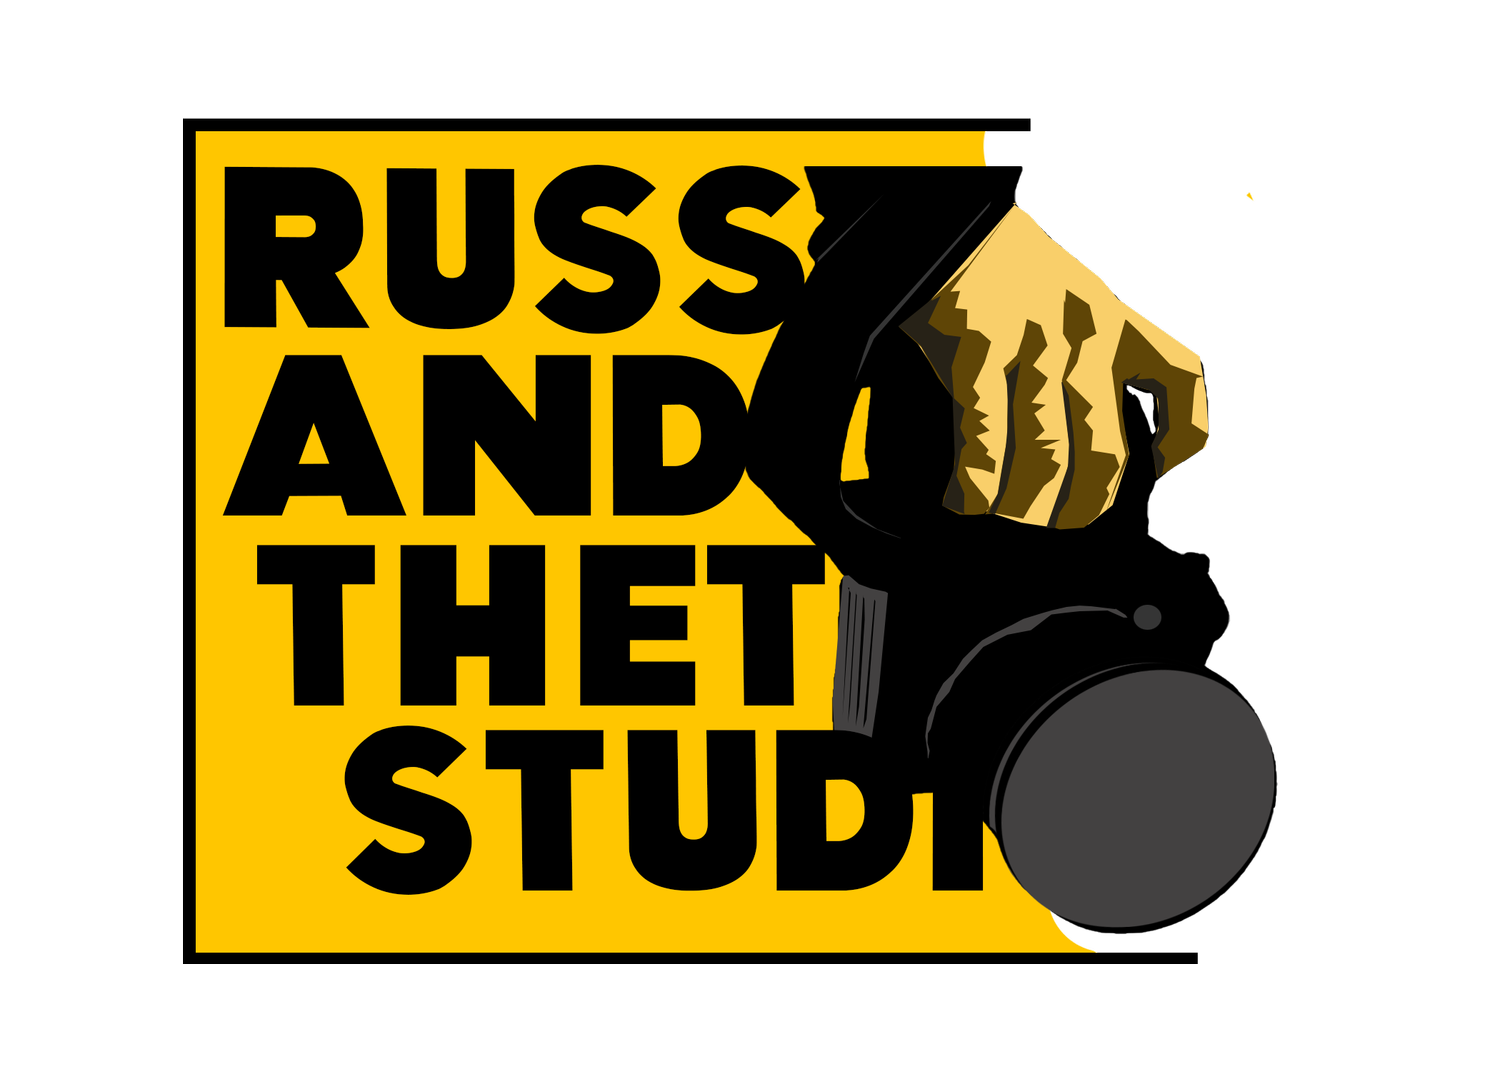 Russ & Thet Studio